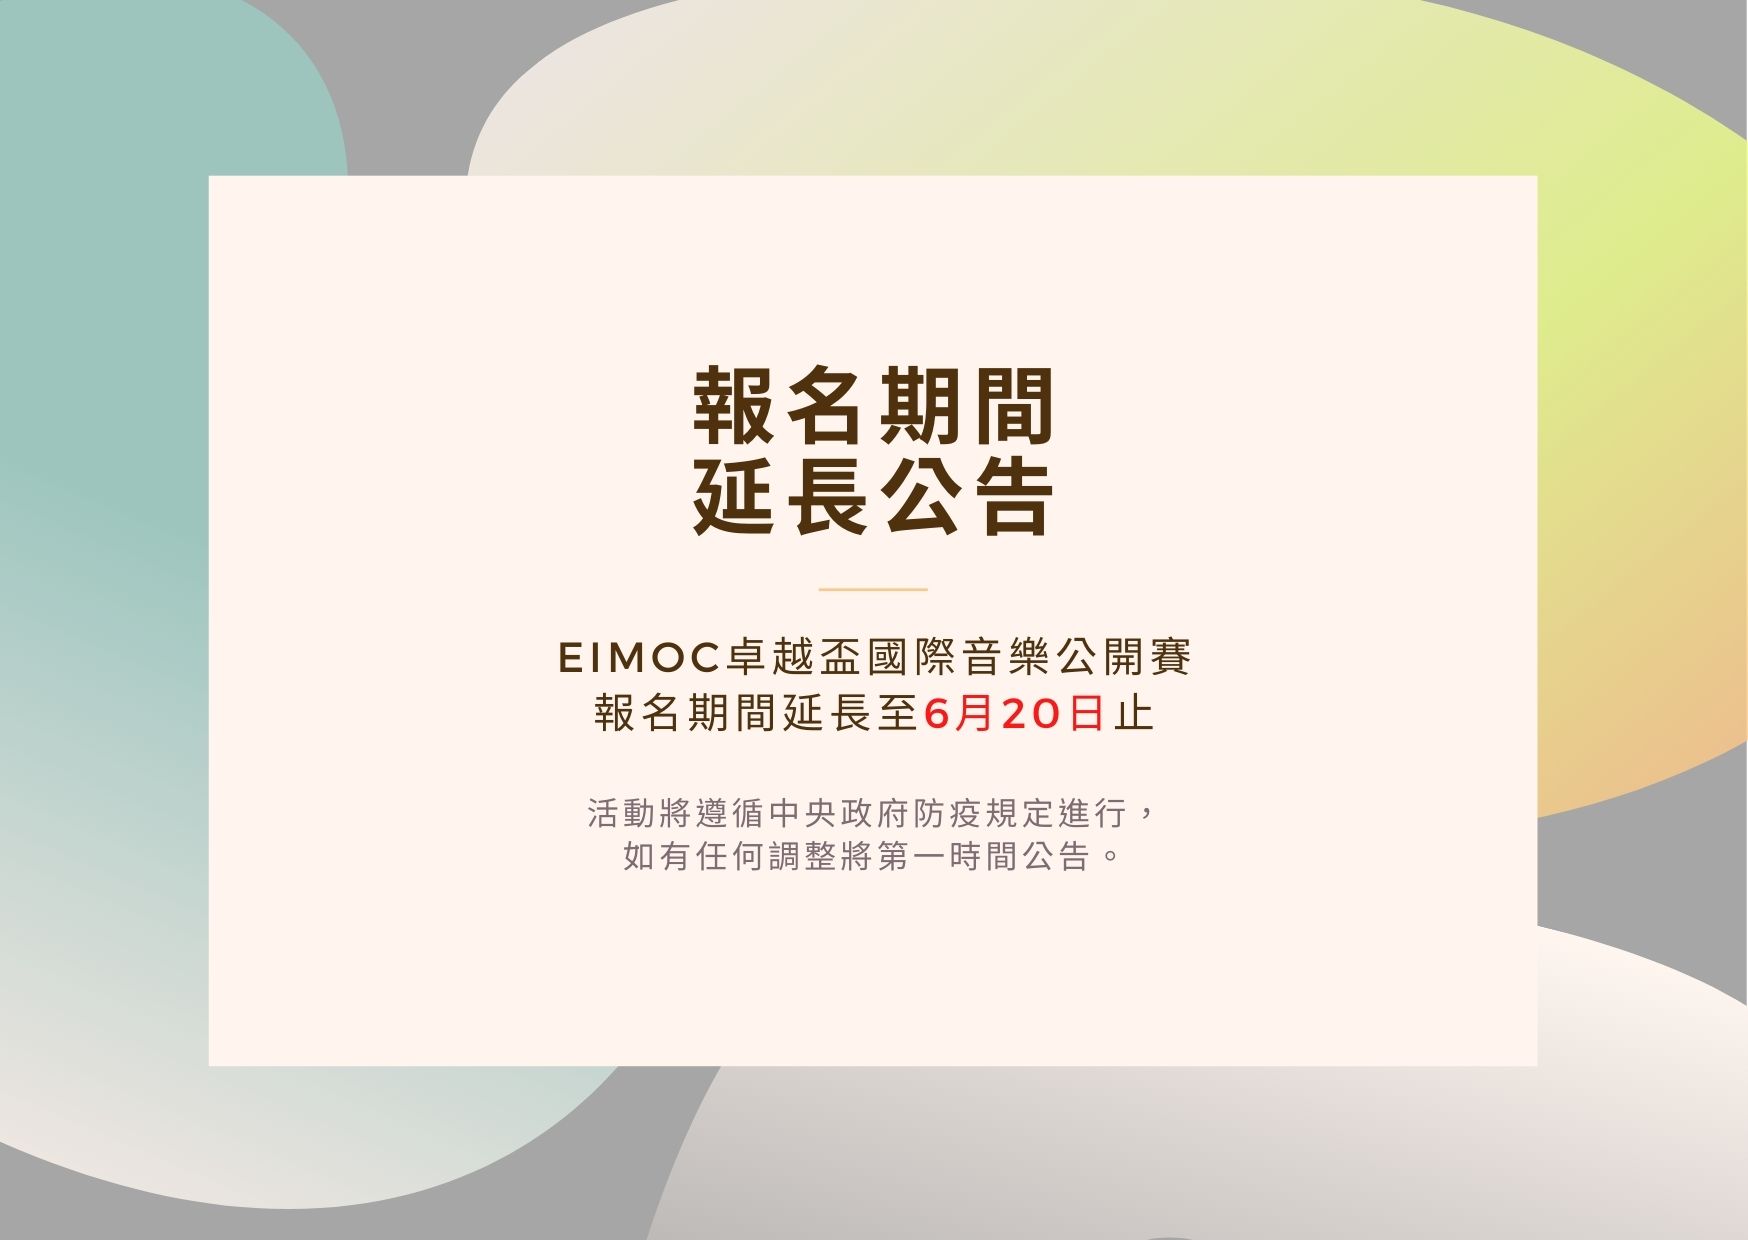 2022 EIMOC卓越盃國際音樂公開賽  報名期限延長公告